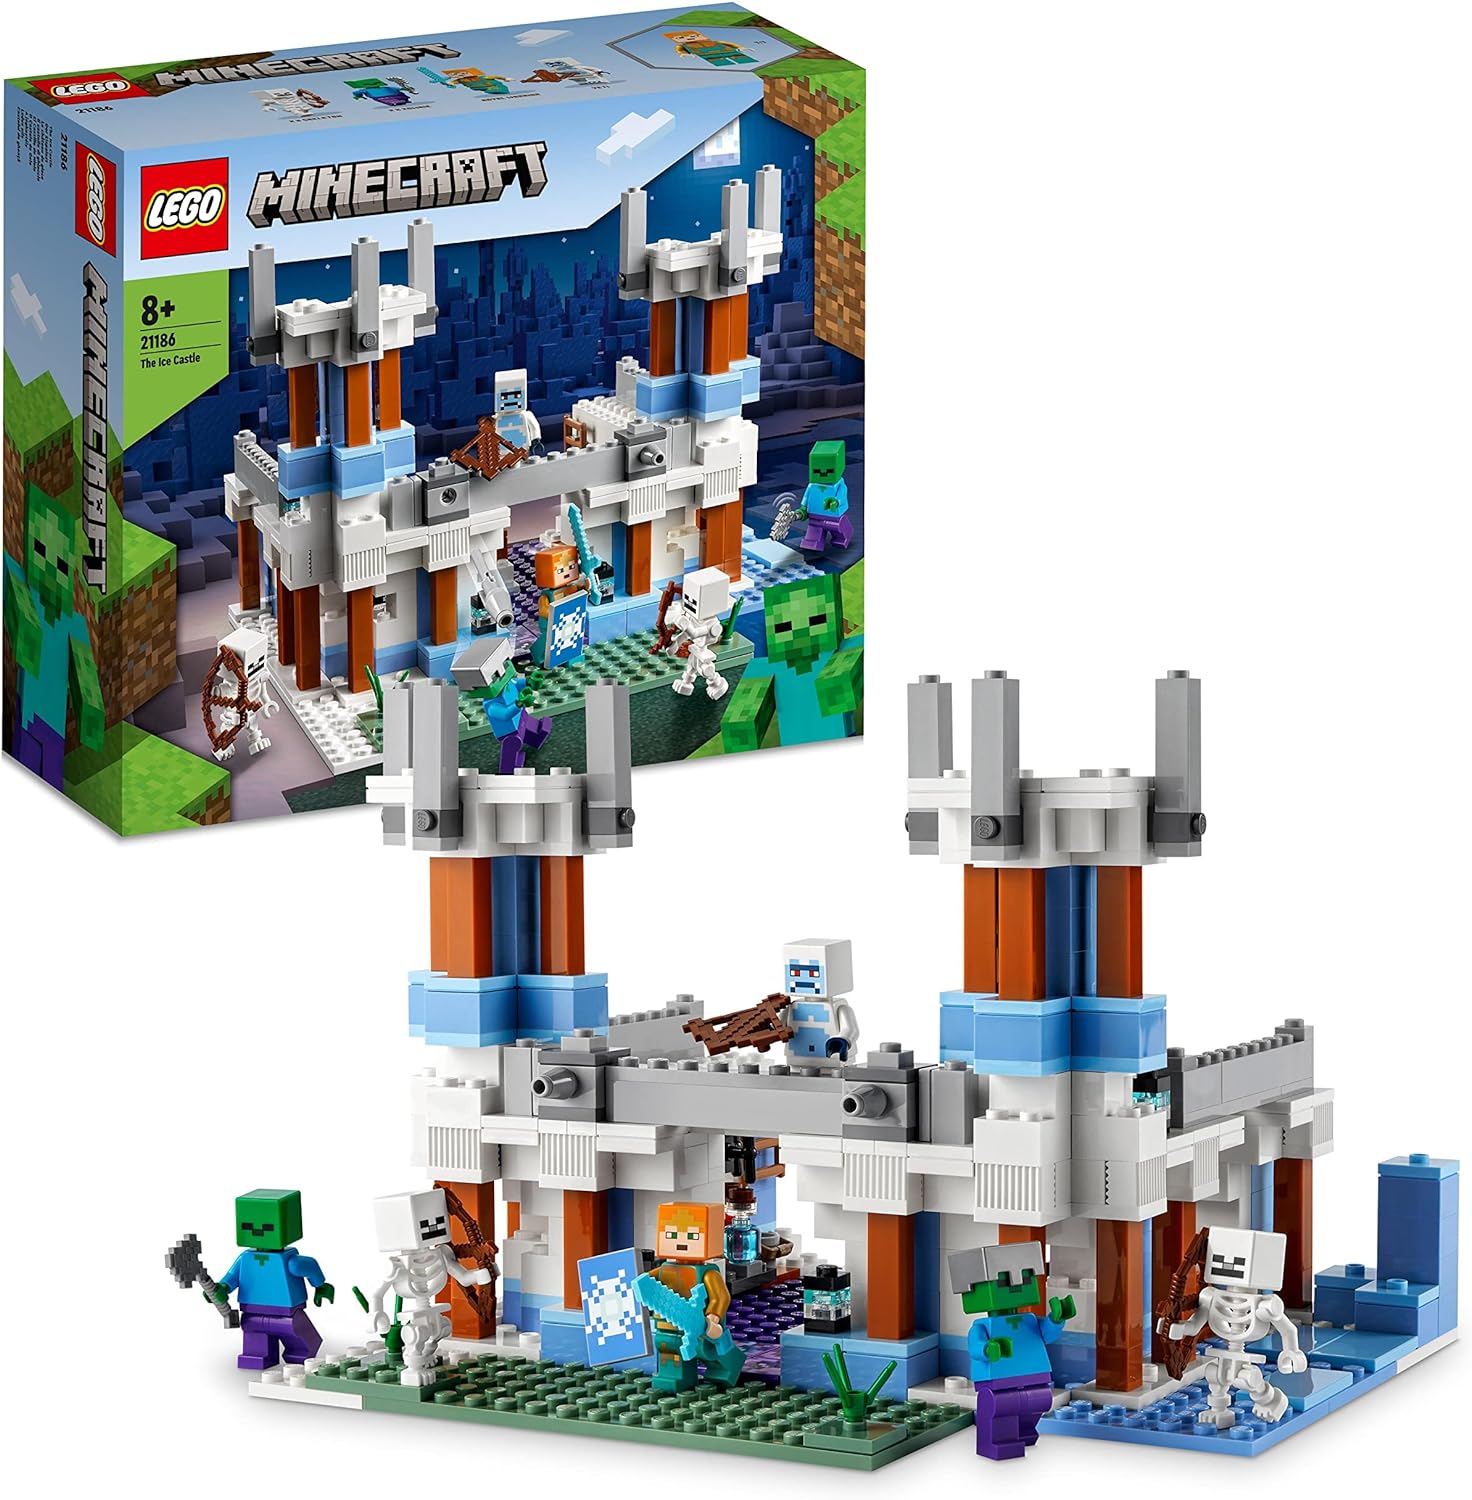 LEGO 21186 Minecraft Der Eispalast Spielzeug-Schloss inkl. Königlicher Krieger Diamantschwert Skelett und Zombie LEGO-Bausteine LEGO-Sets LEGO-Steine Bausteine Sets Steine